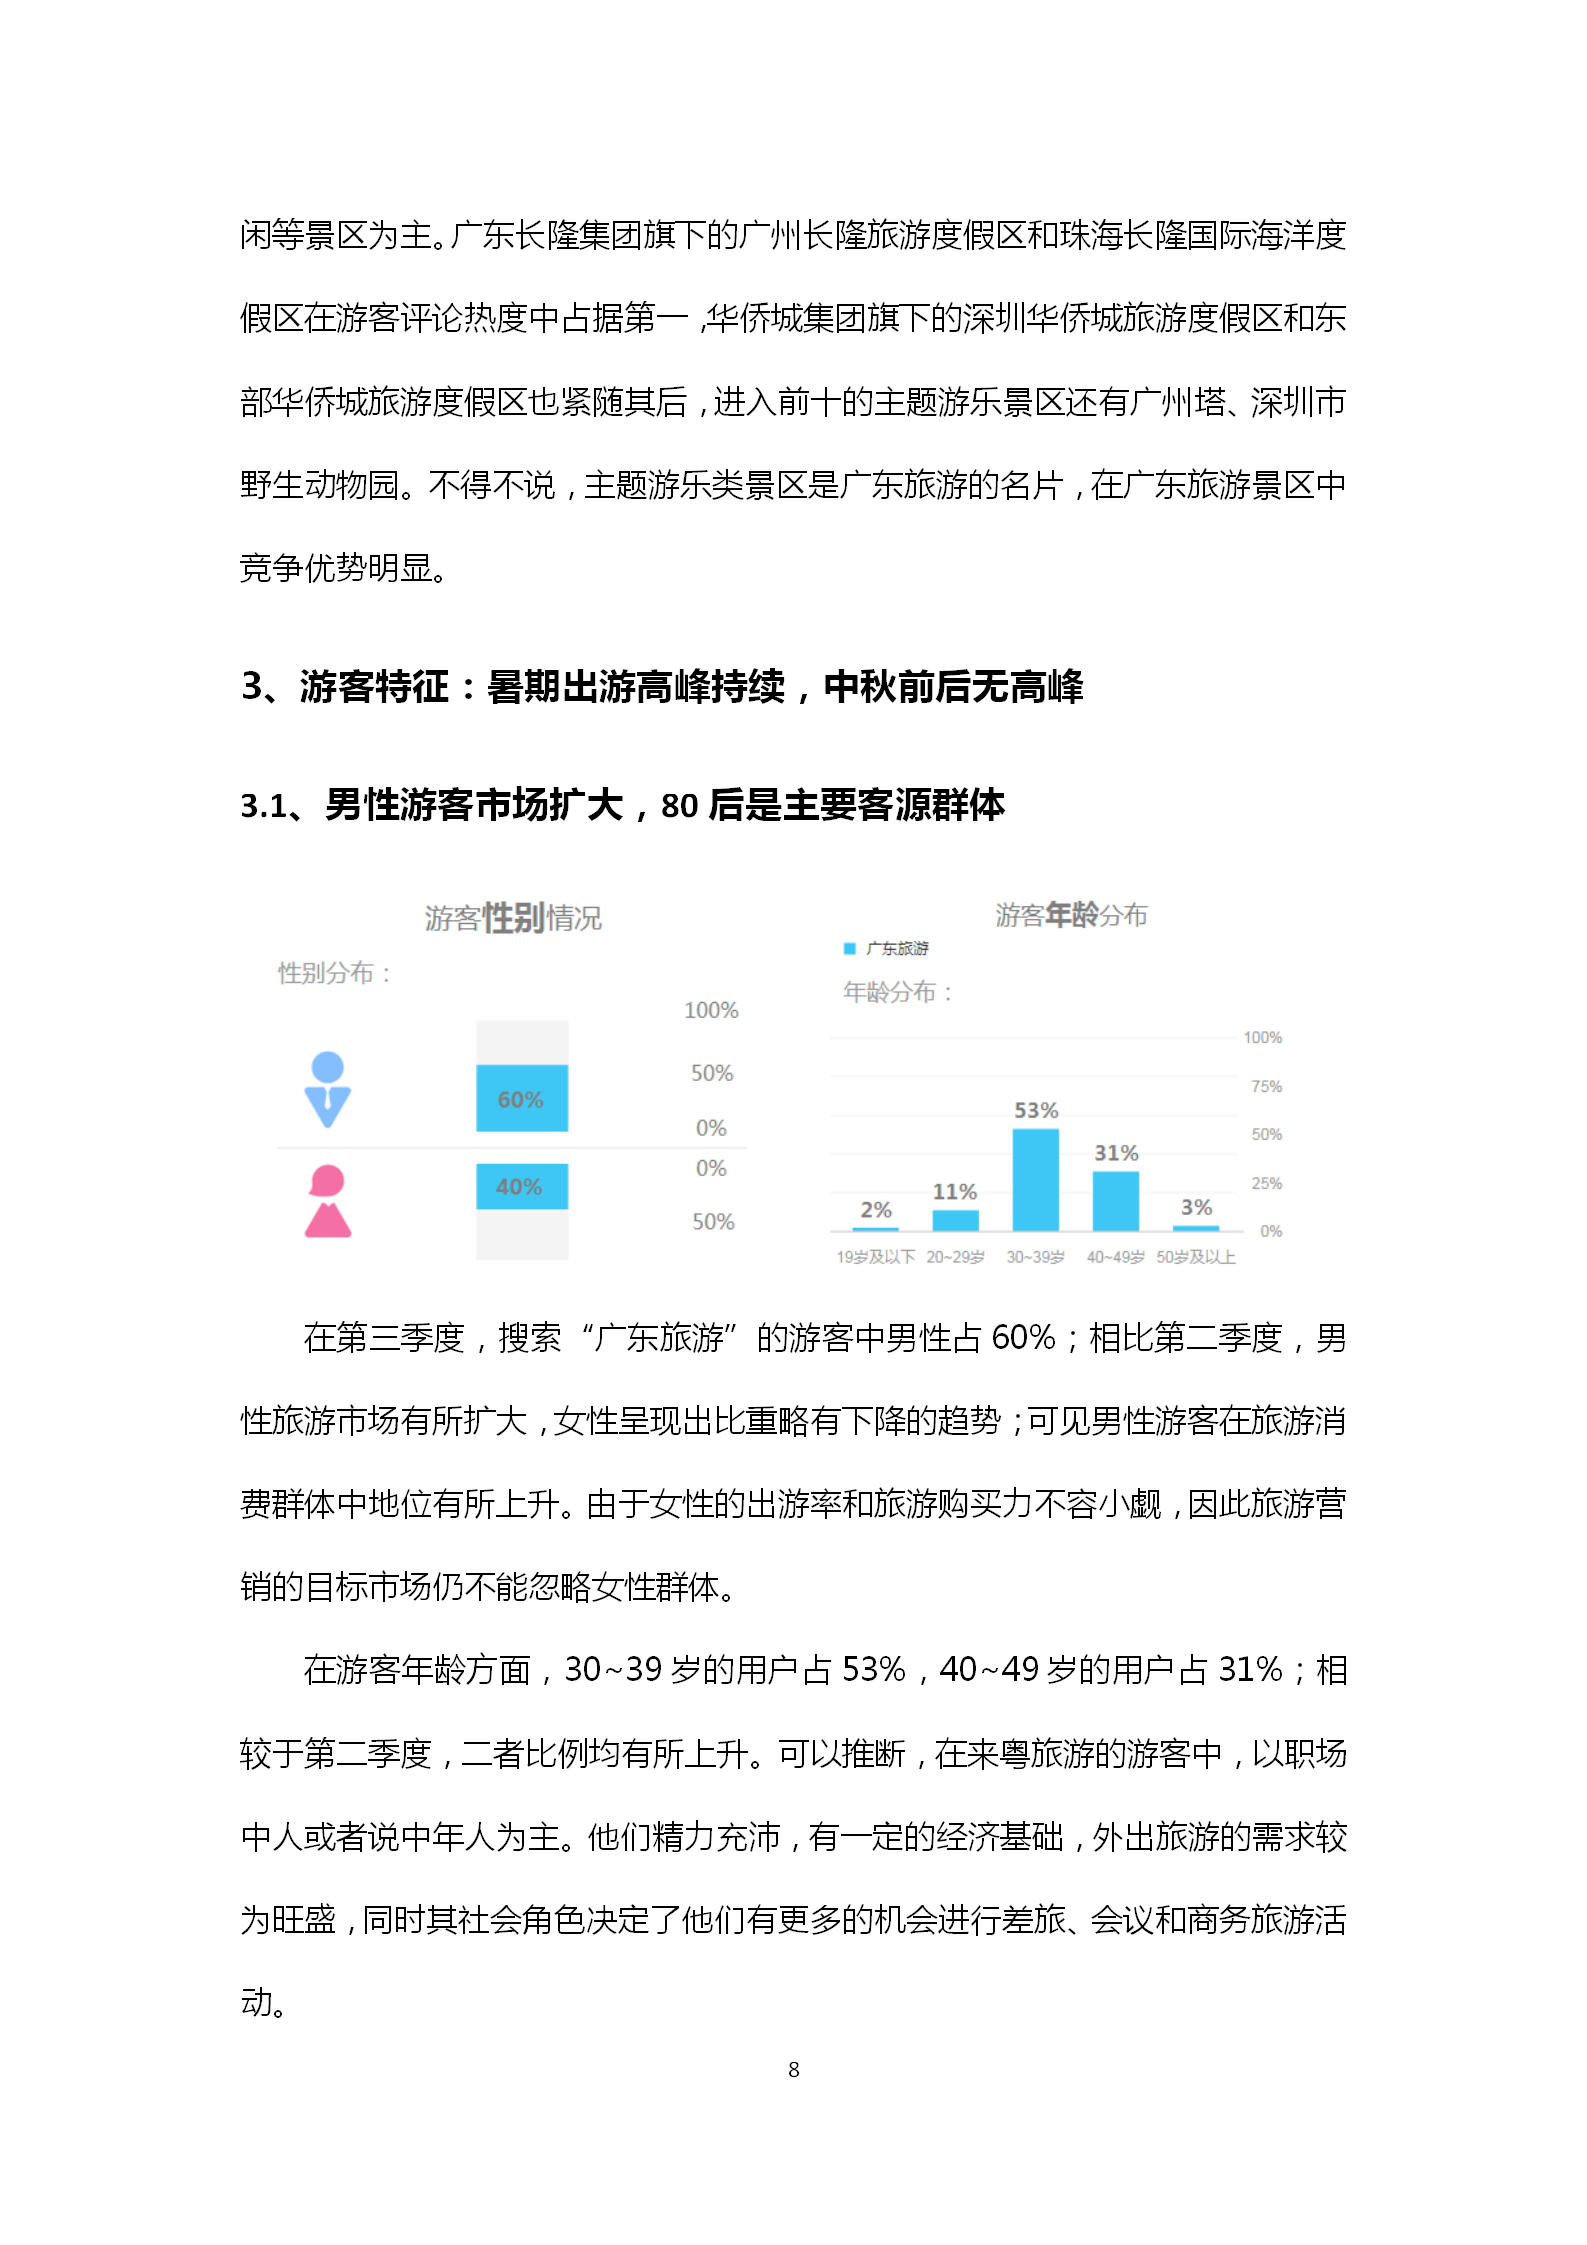 广东省旅游景区游客满意度大数据调查报告-2018年第三季度20181106_09